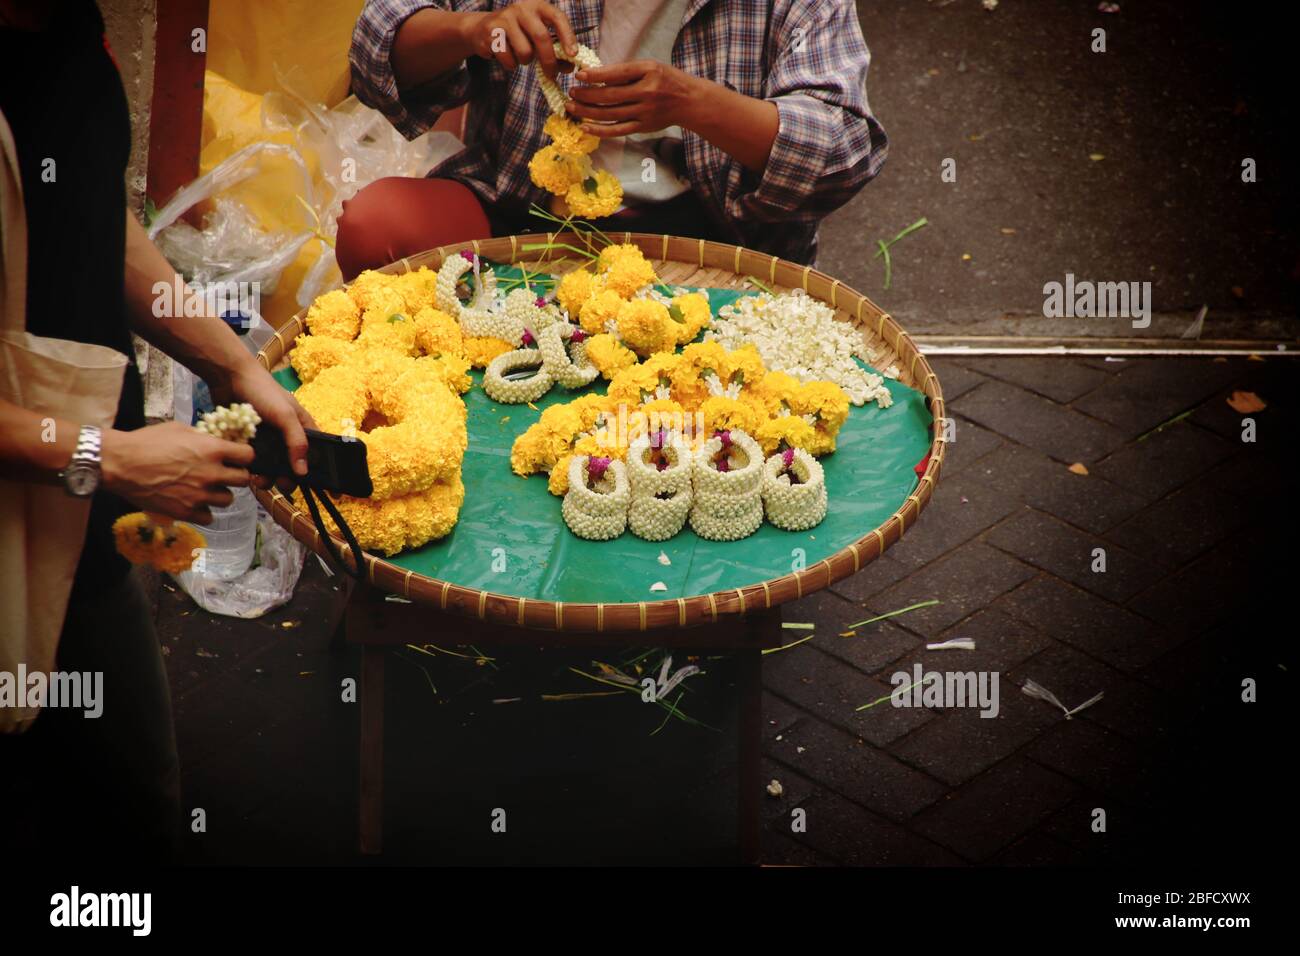 Thailändischer Straßenverkäufer, der Phuang malai oder malai verkauft, eine Blumengirlande, die für buddhistische Opfergaben und Glücksbringer in der thailändischen Kultur verwendet wird Stockfoto